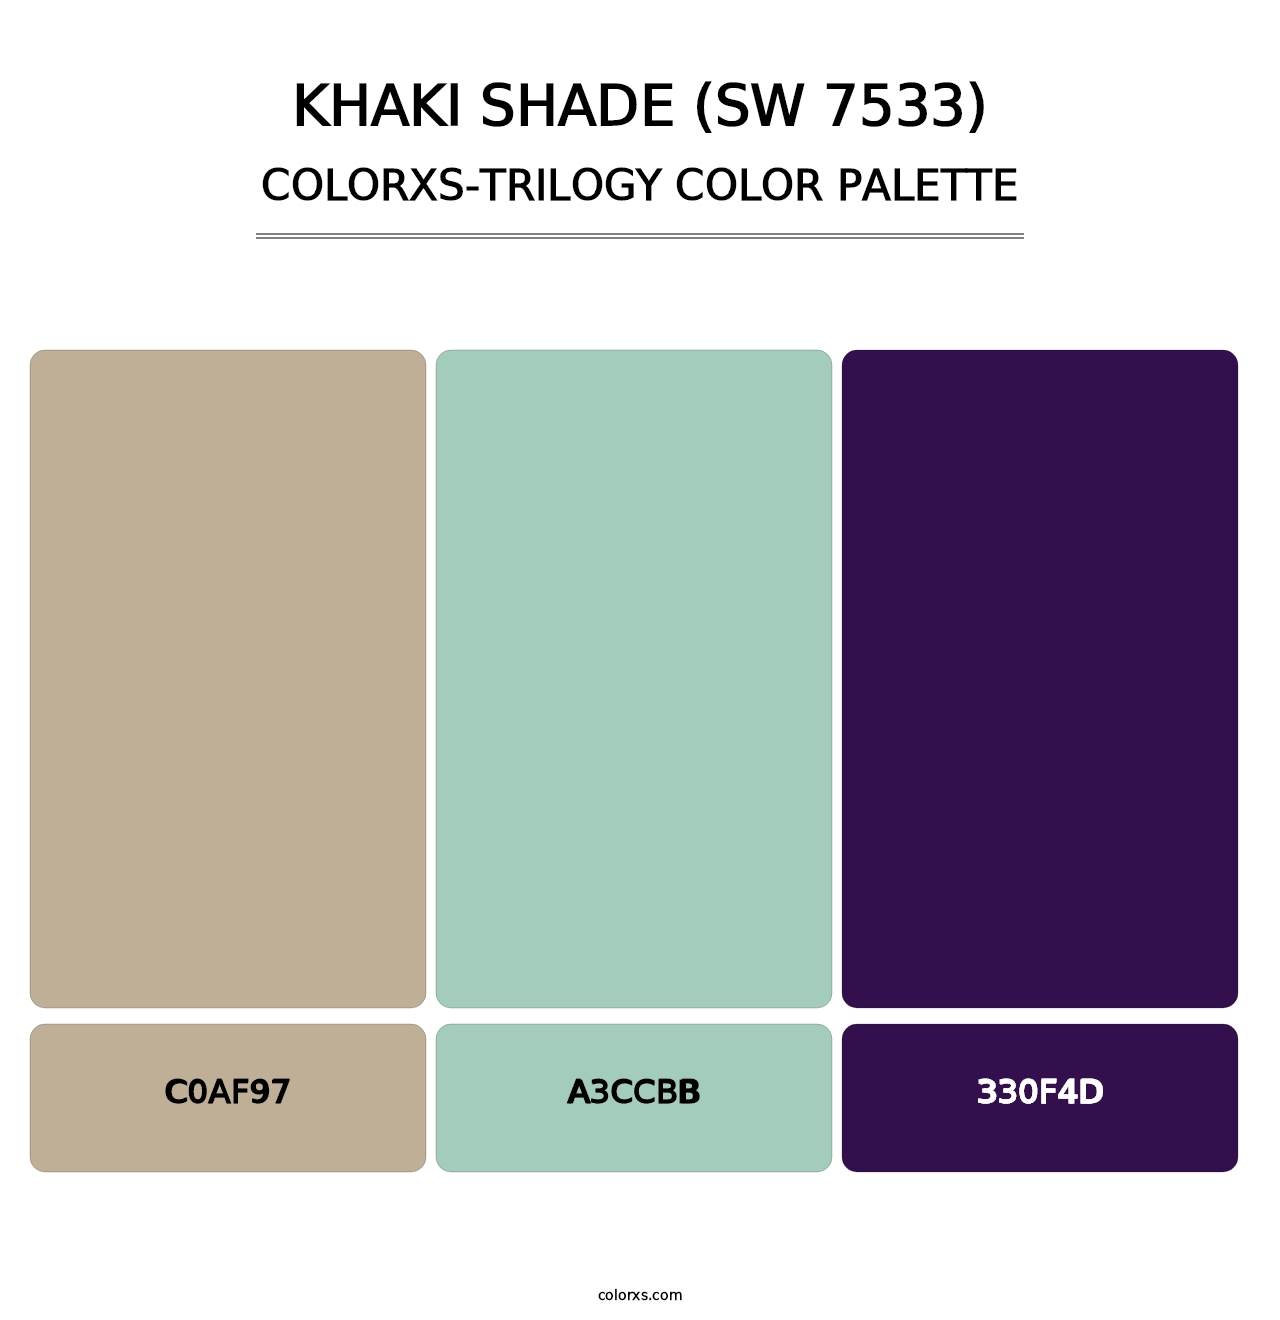 Khaki Shade (SW 7533) - Colorxs Trilogy Palette